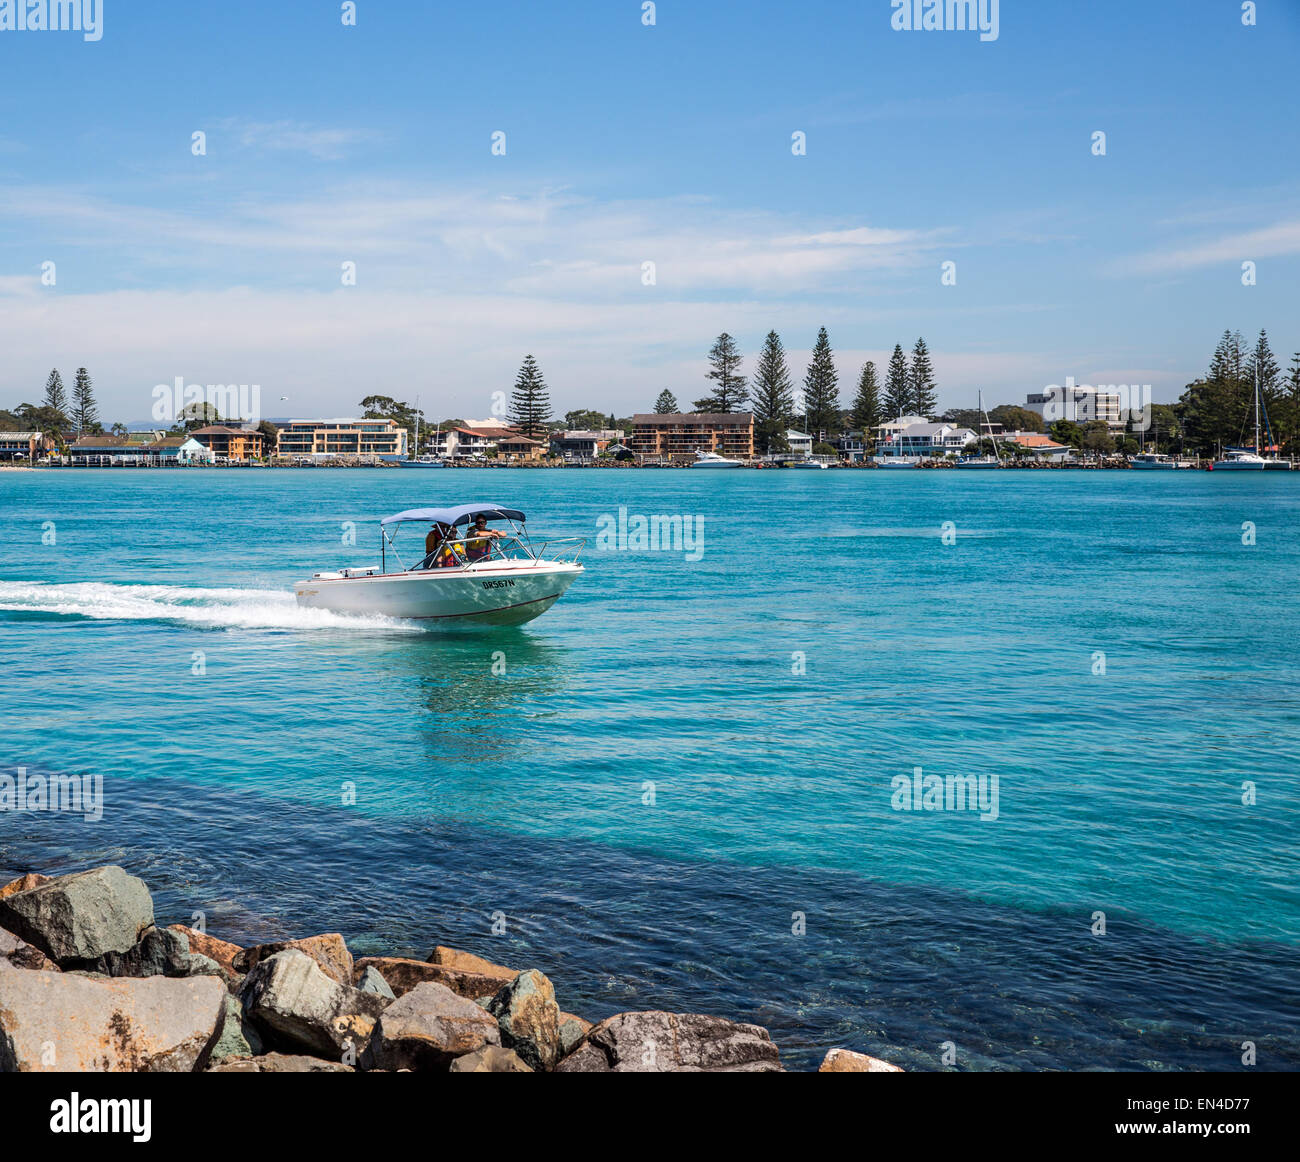 Ein kleines Boot reist Wallis See Eingang und Wellenbrecher, Forster, New South Wales Australien Stockfoto